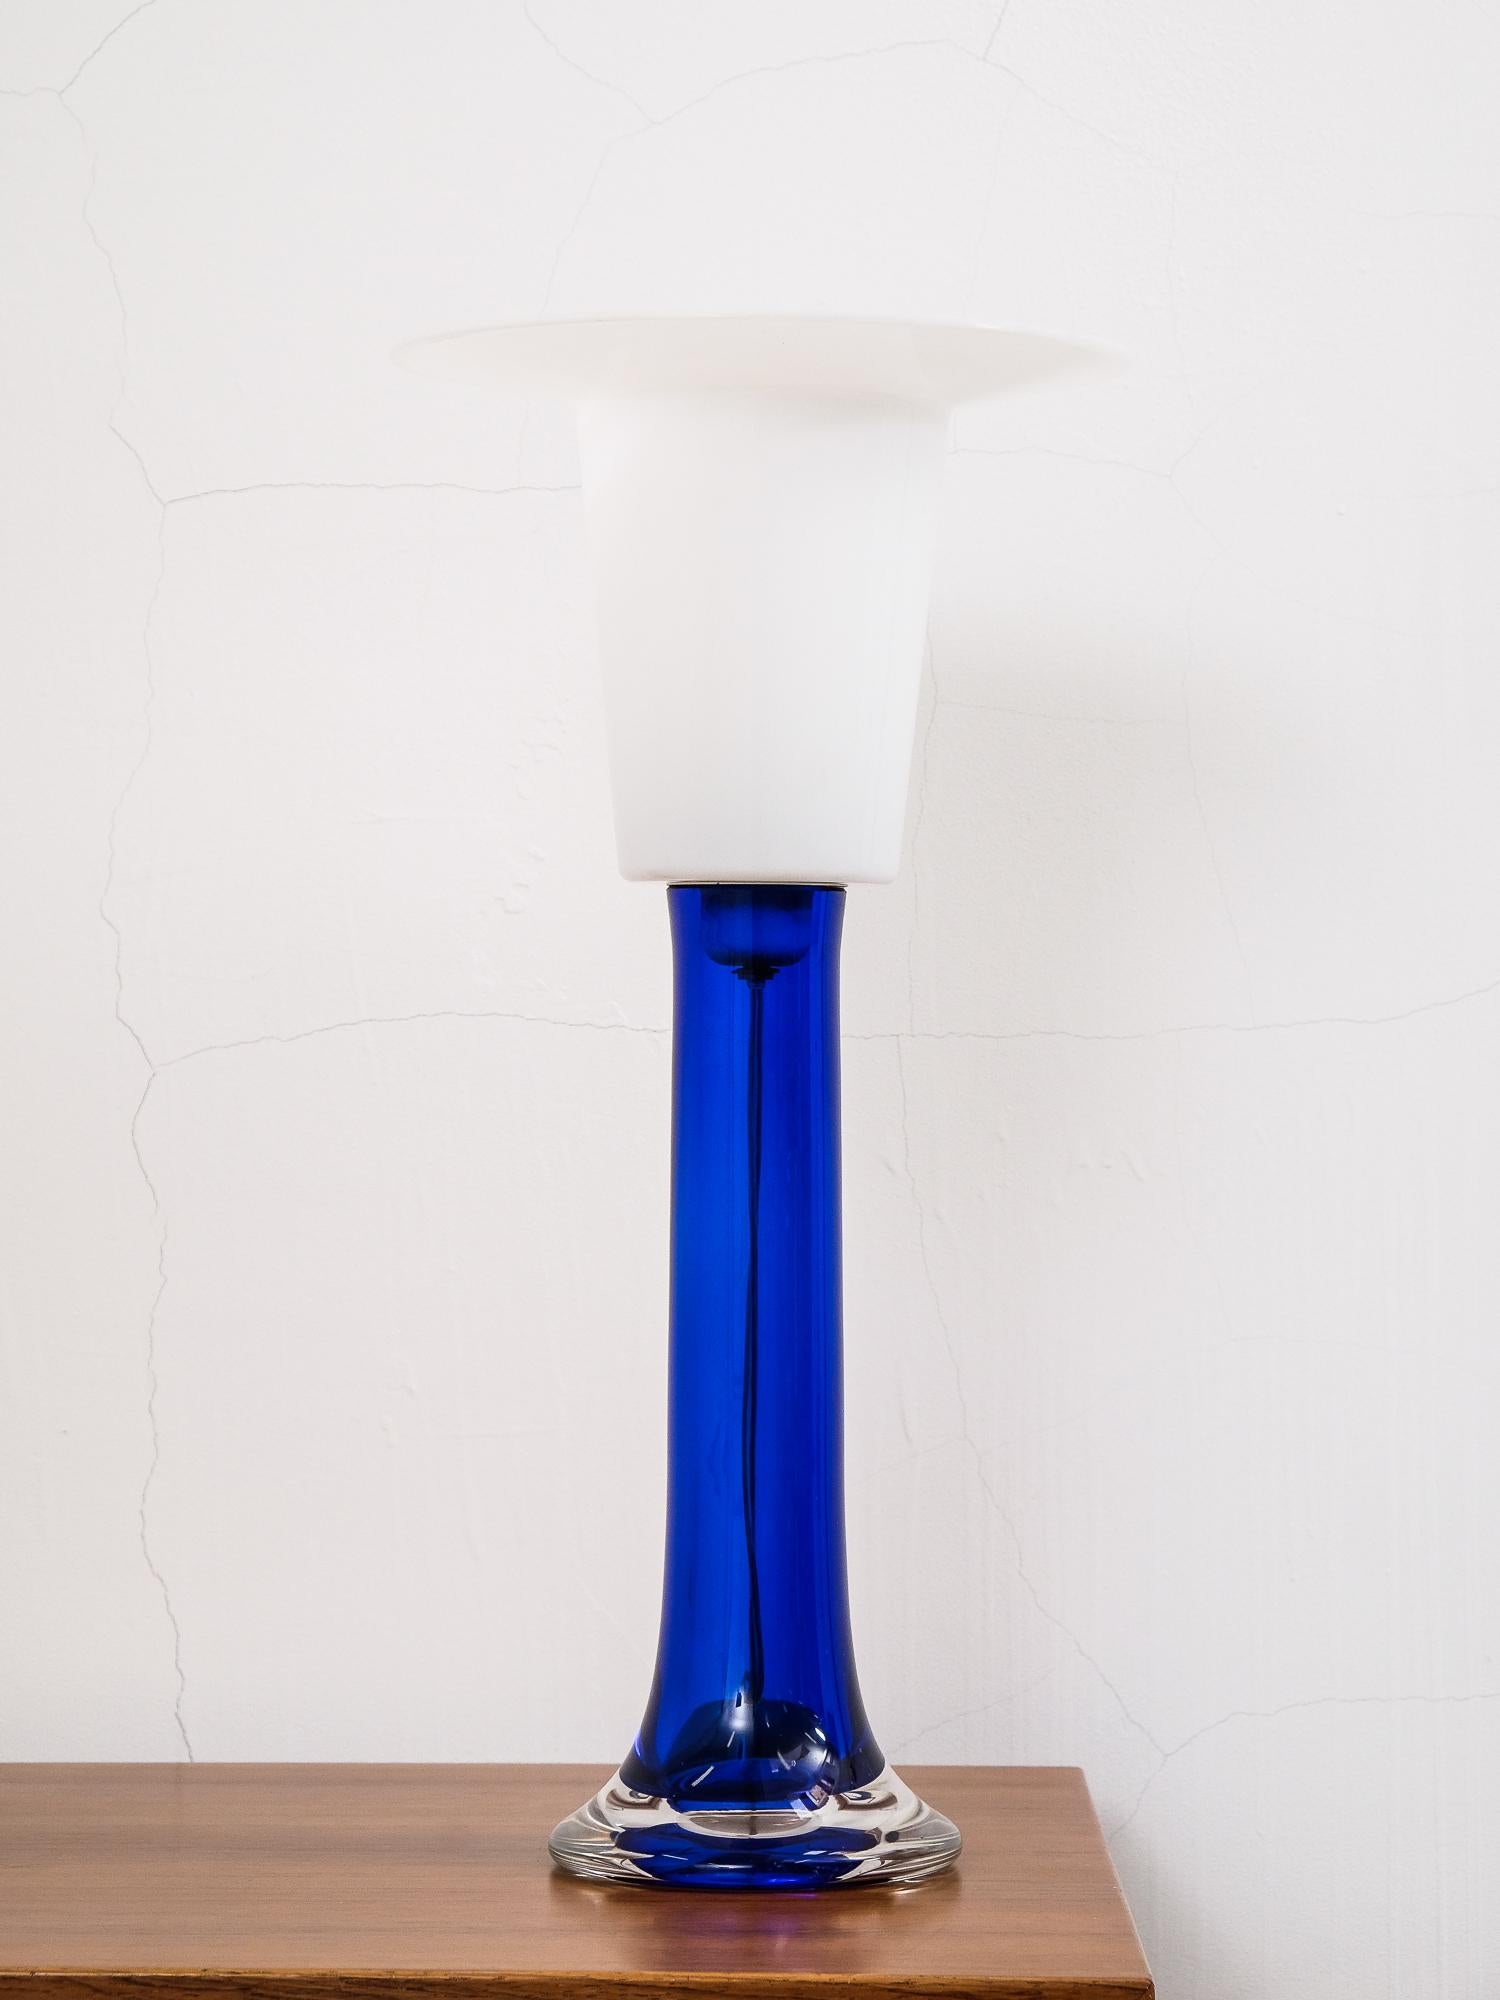 Grande lampe de table en verre bleu cobalt des années 1970 par Luxus Vittsjö, fabriquée en Suède. La partie supérieure est en plastique blanc.

Douille E27.